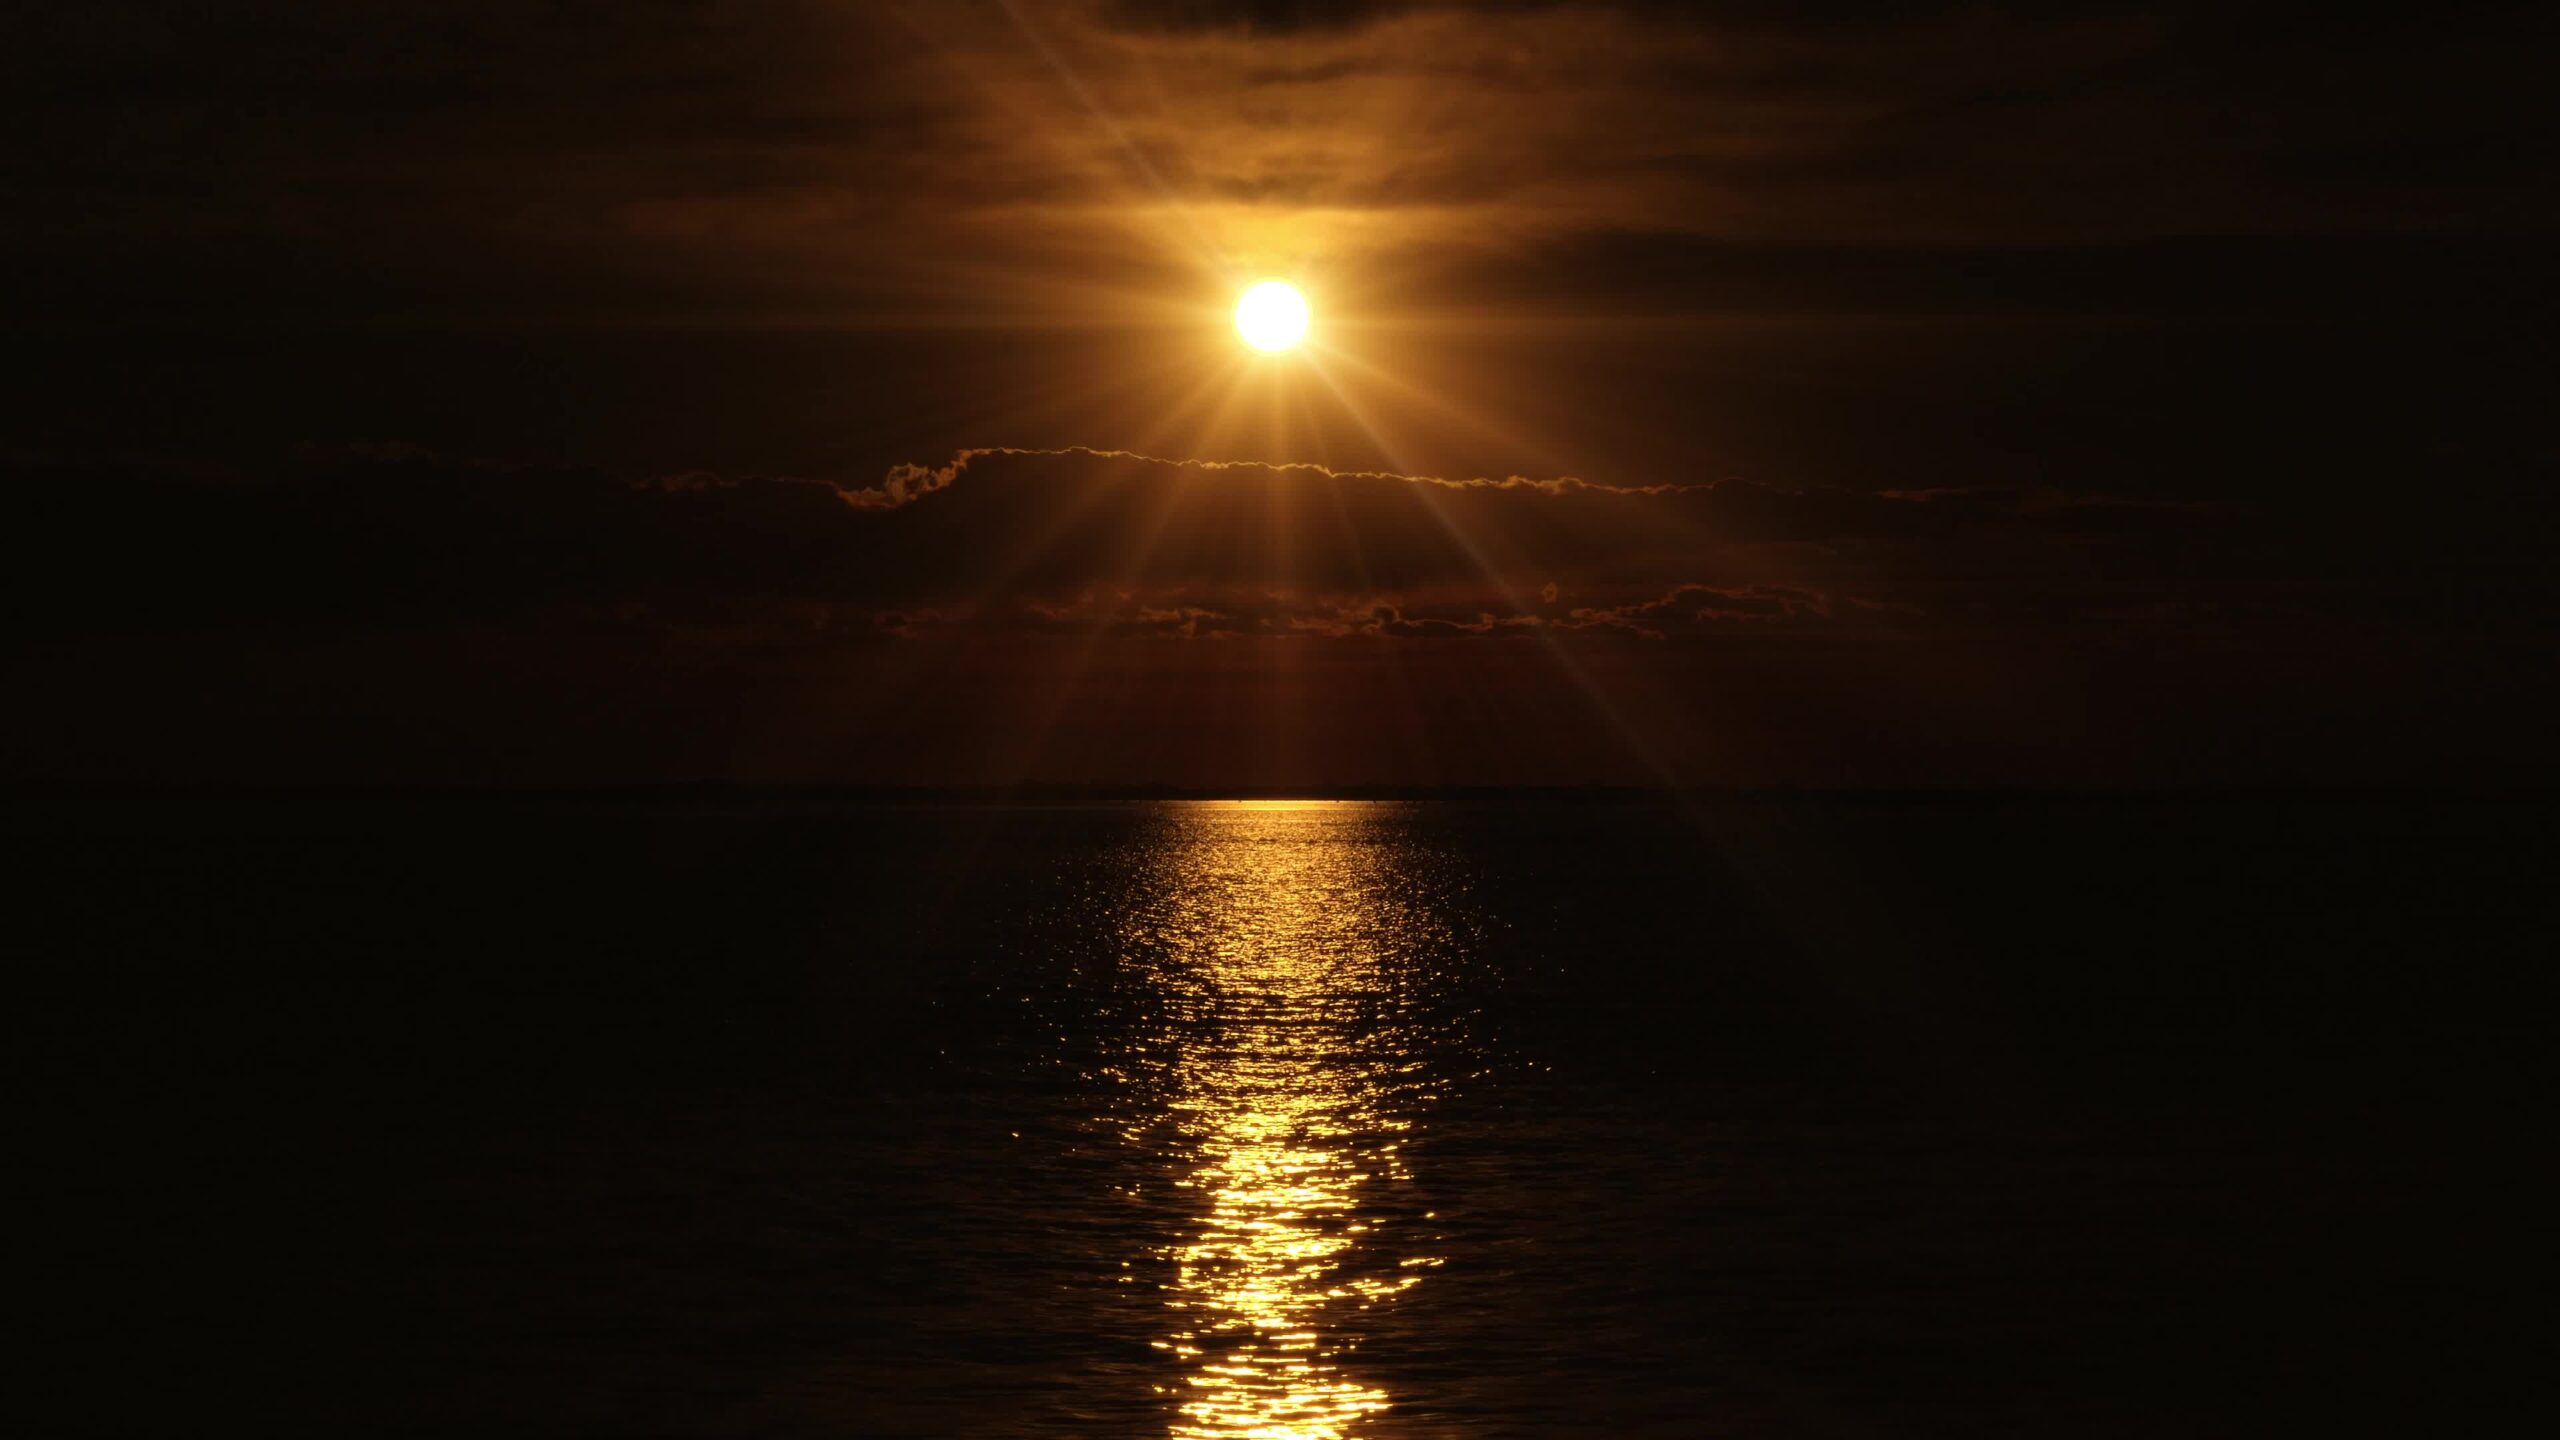 La luce radiosa del disco solare si riflette sull’acqua in un mare sconfinato